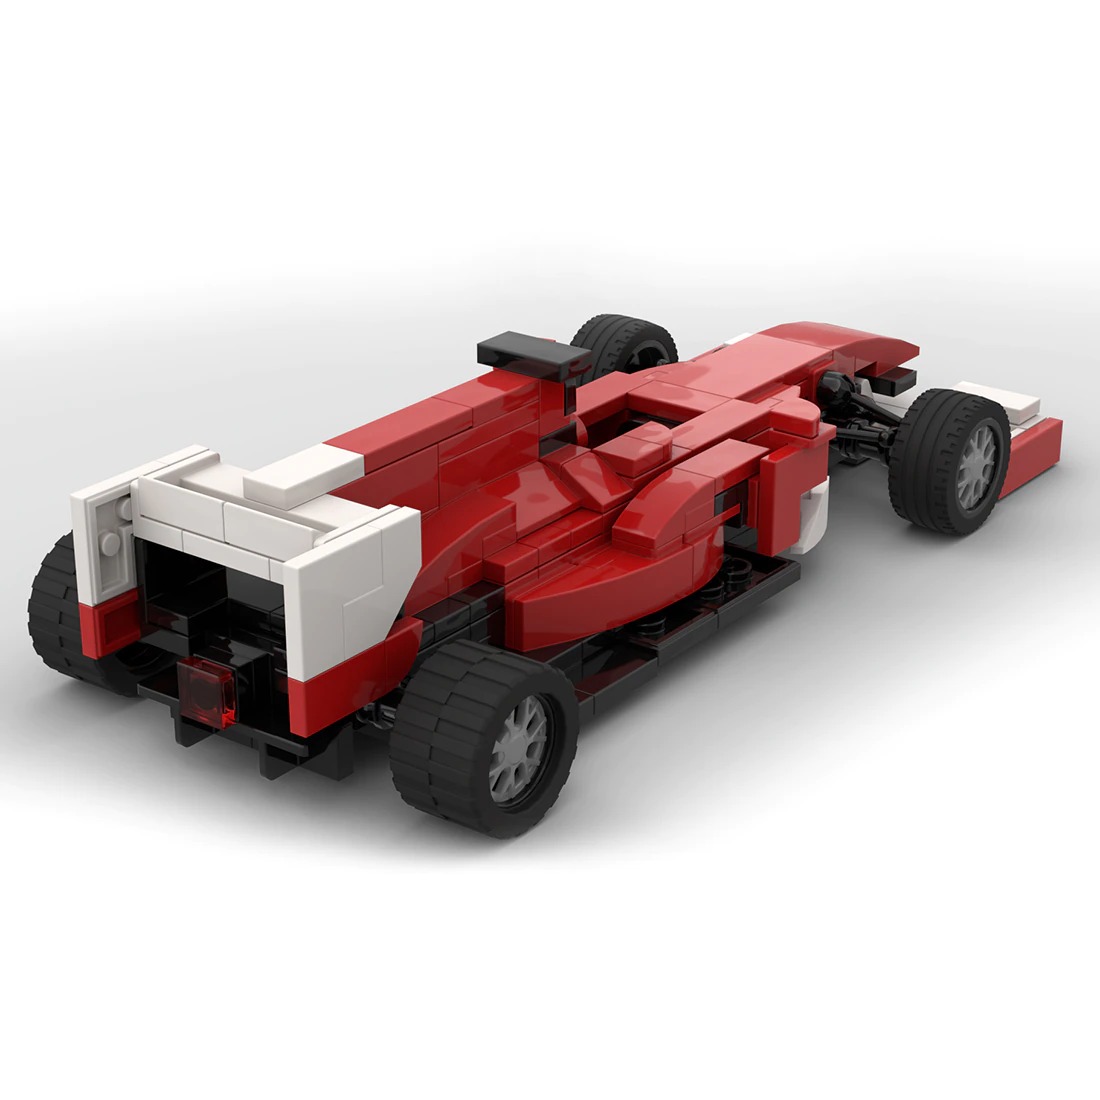 F10 Racing Car Moc 100267 3